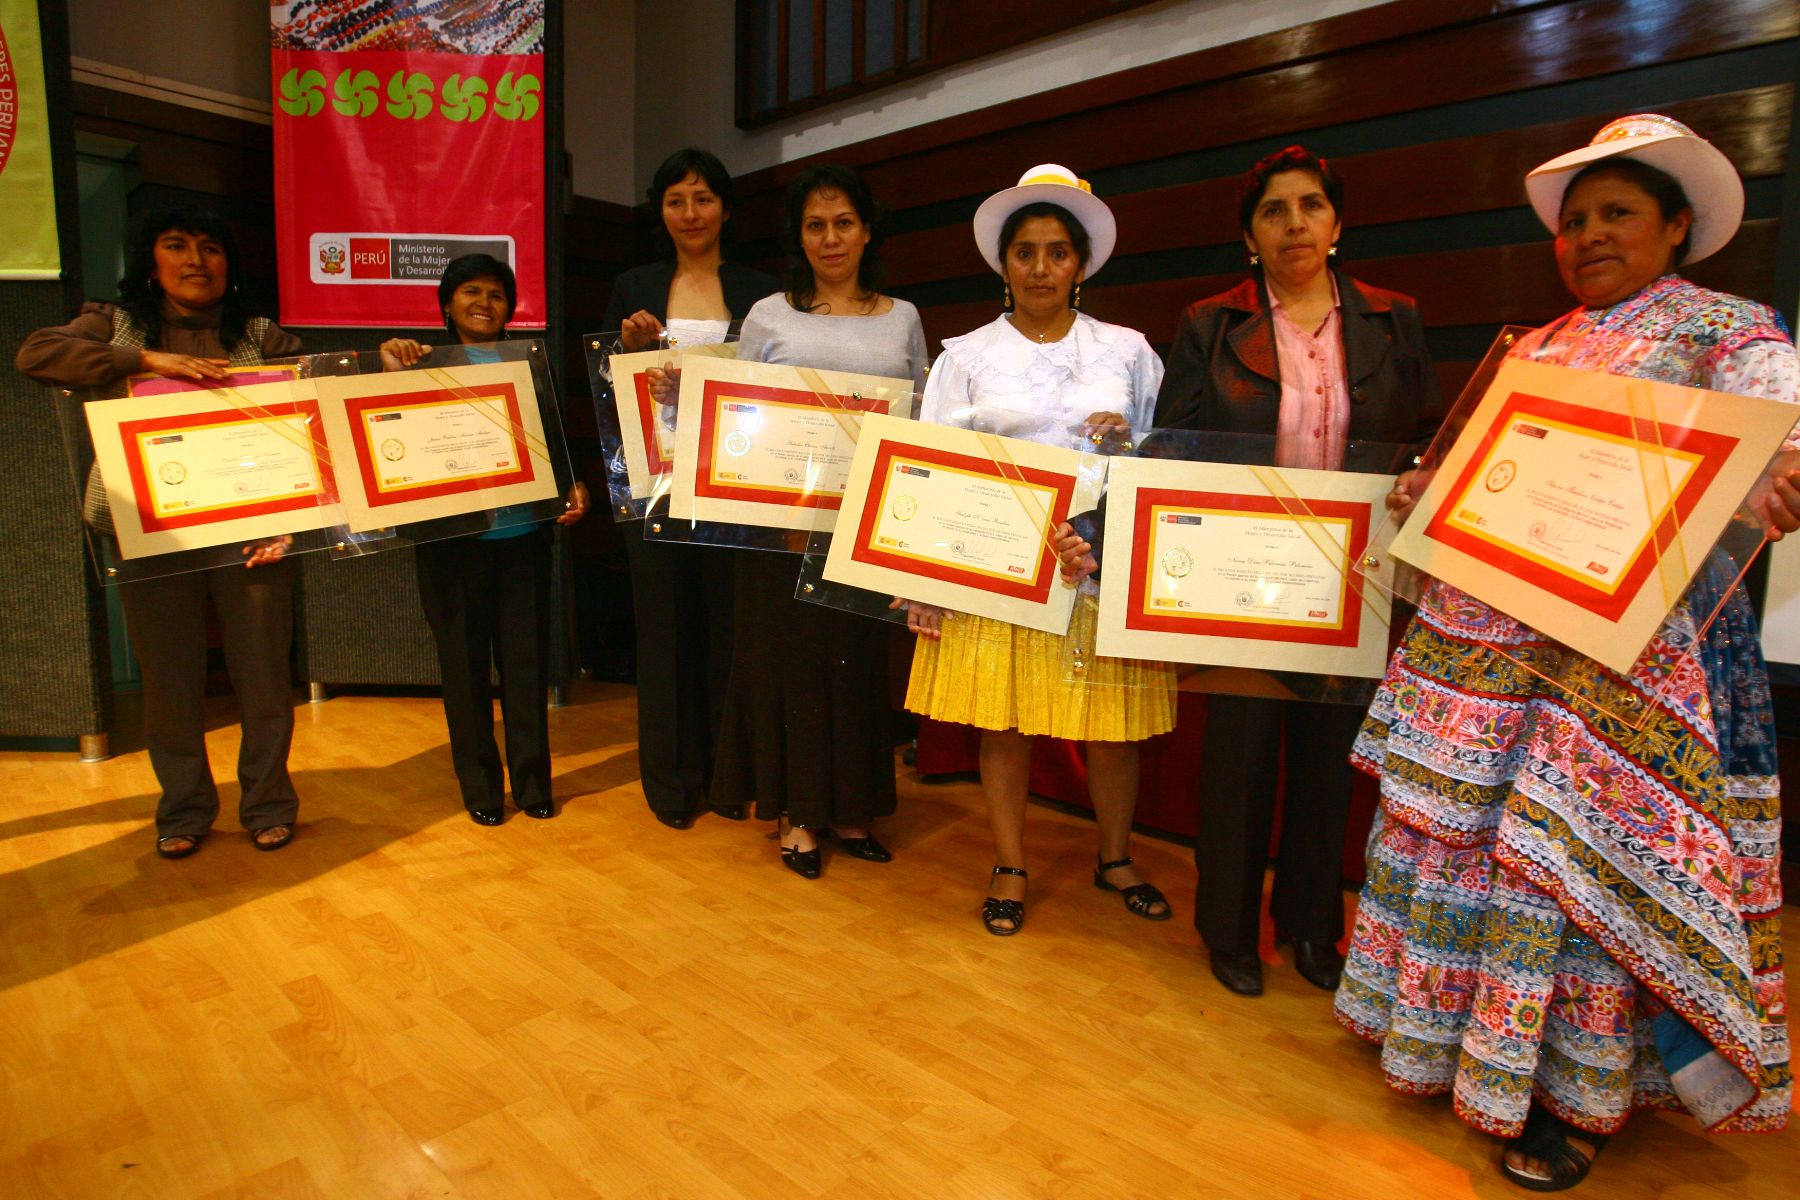 Ganadoras del concurso "Reconocimiento Sello Hecho por Mujeres Peruanas”, en Jesús María. ANDINA/Foto César García.